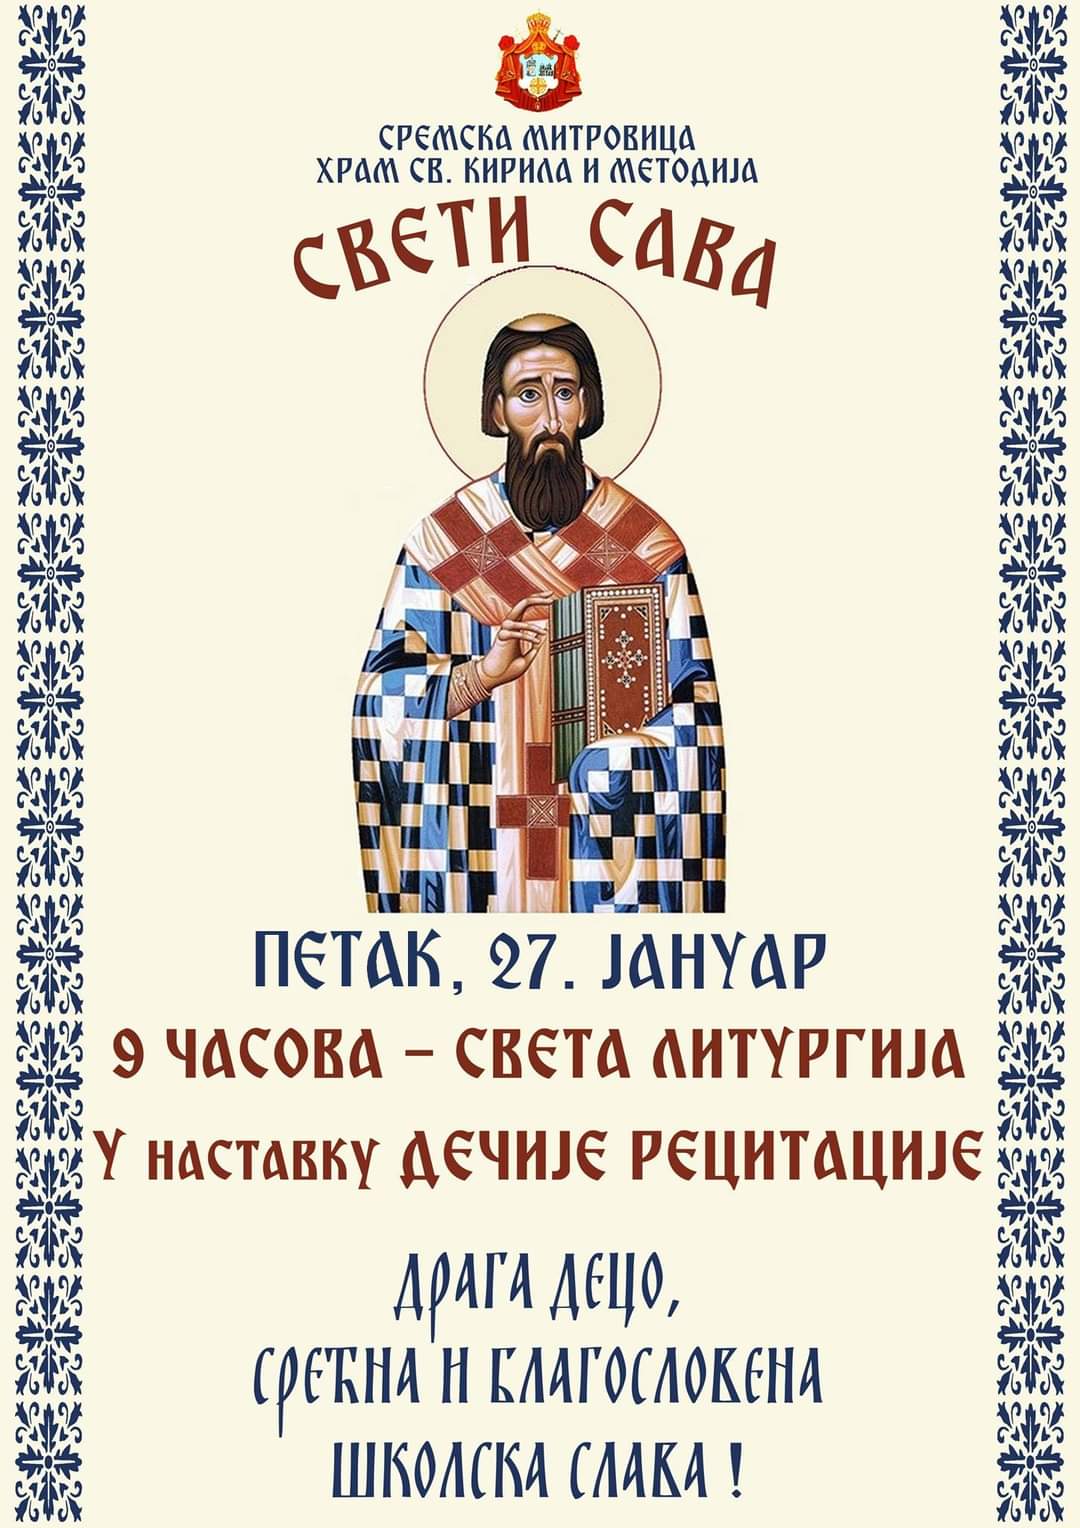 Најава: Прослава празника Светог Саве у храму Св. Кирила и Методија у Сремској Митровици